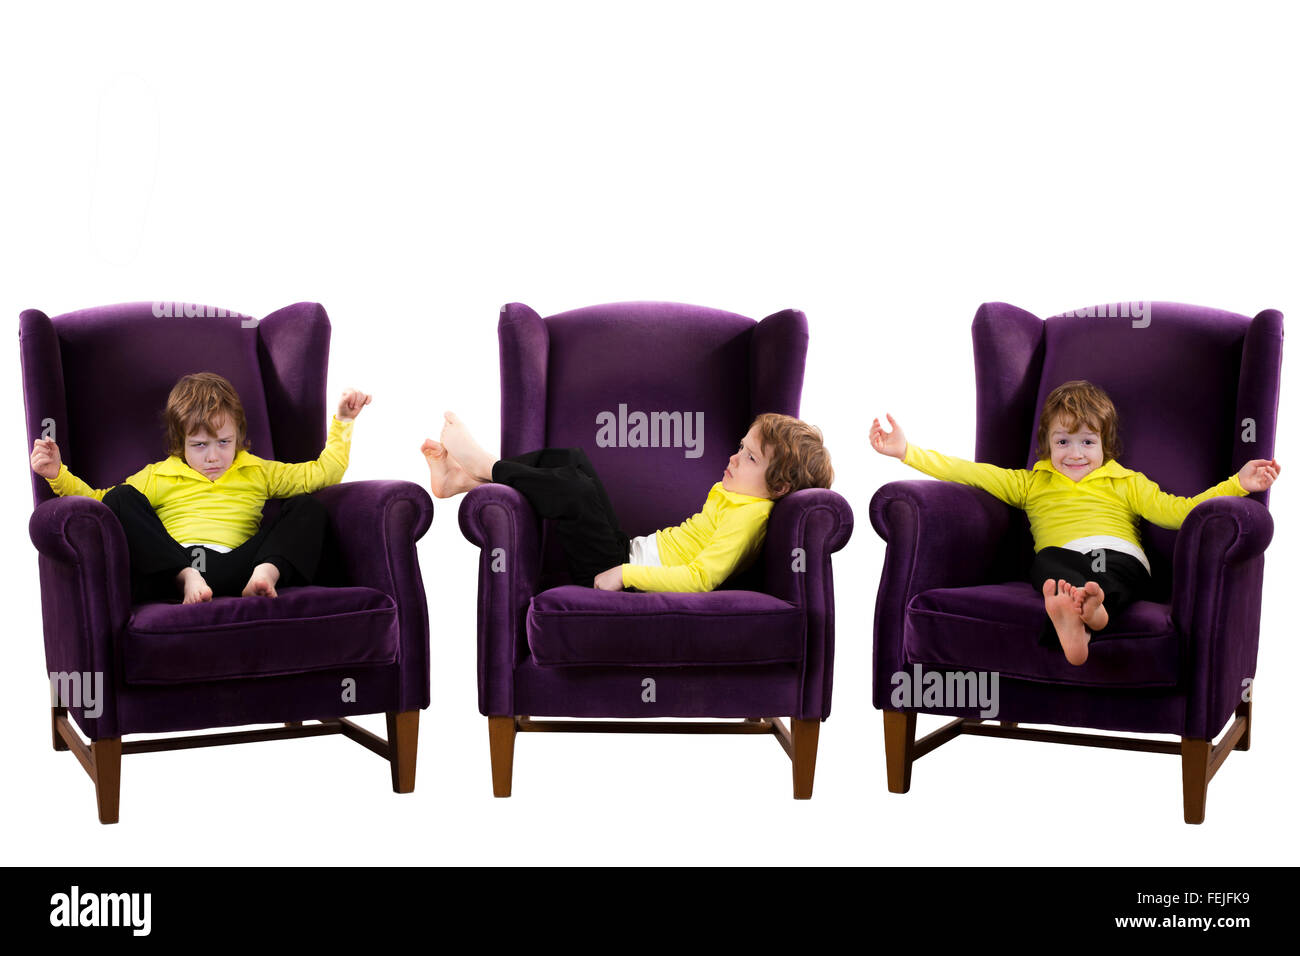 Ennuyer, heureux, en colère contre les cheveux rouges garçon assis sur les trois fauteuils violets isolé sur fond blanc Banque D'Images